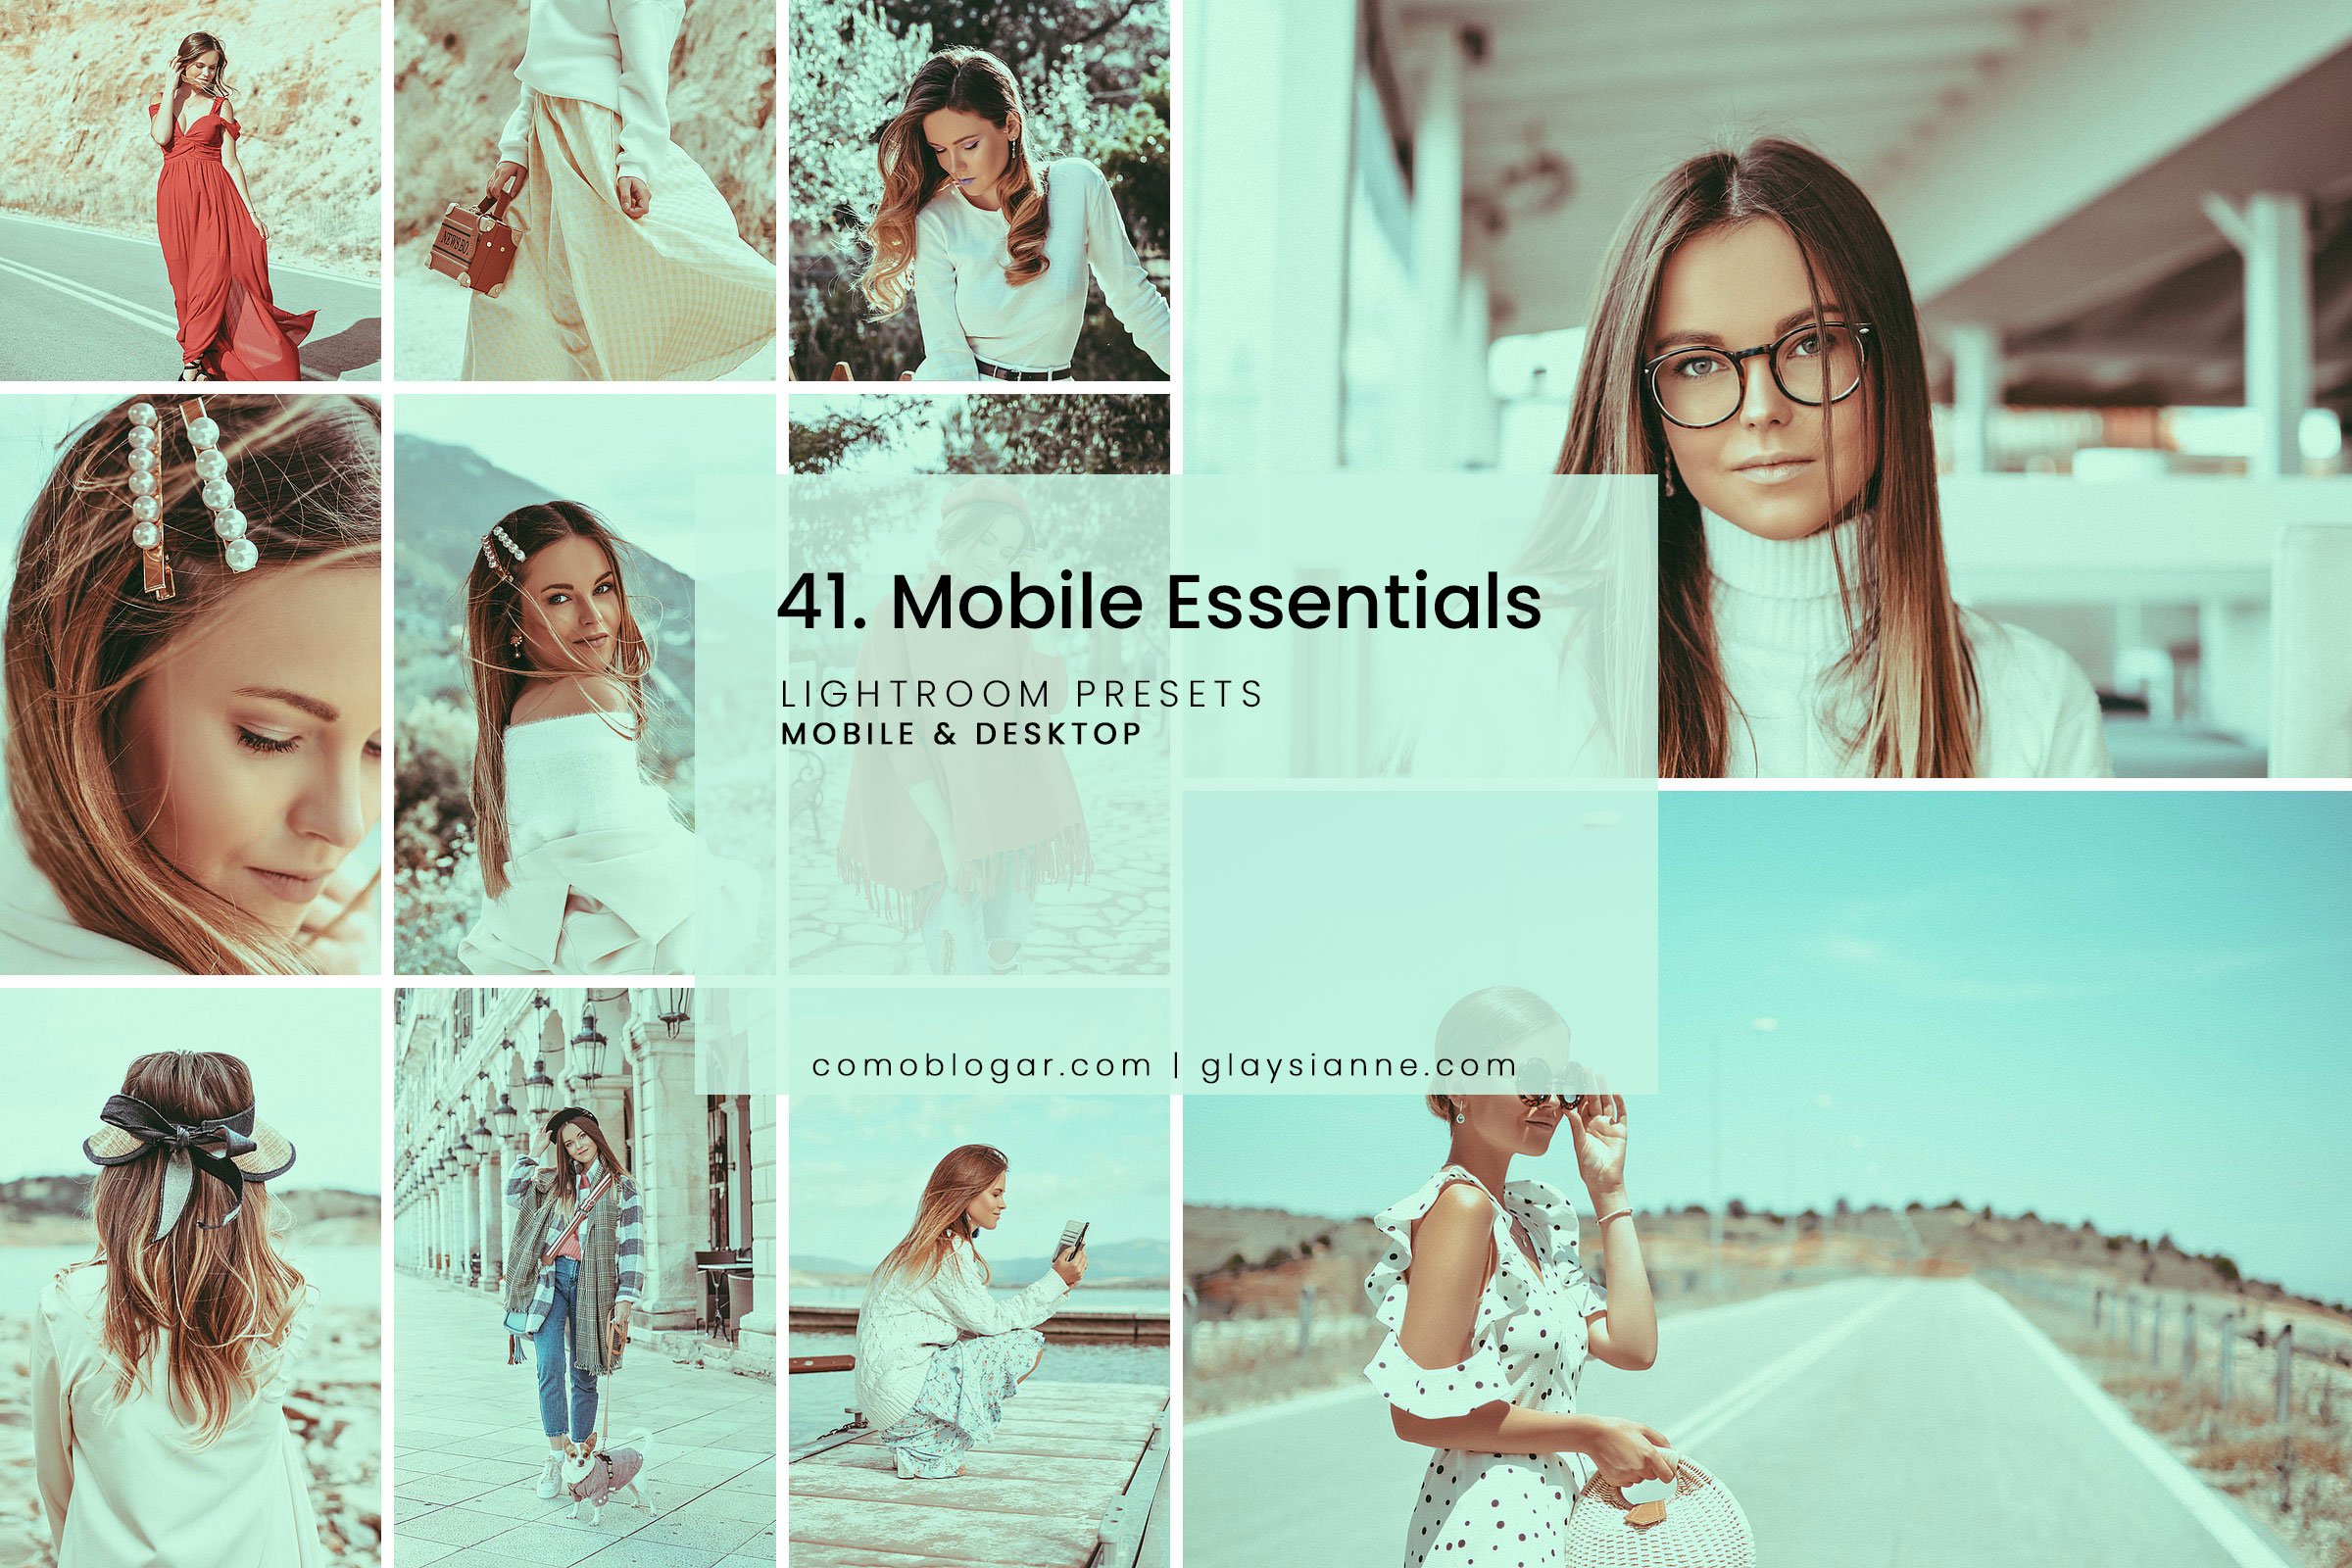 41. Mobile Essentialscover image.